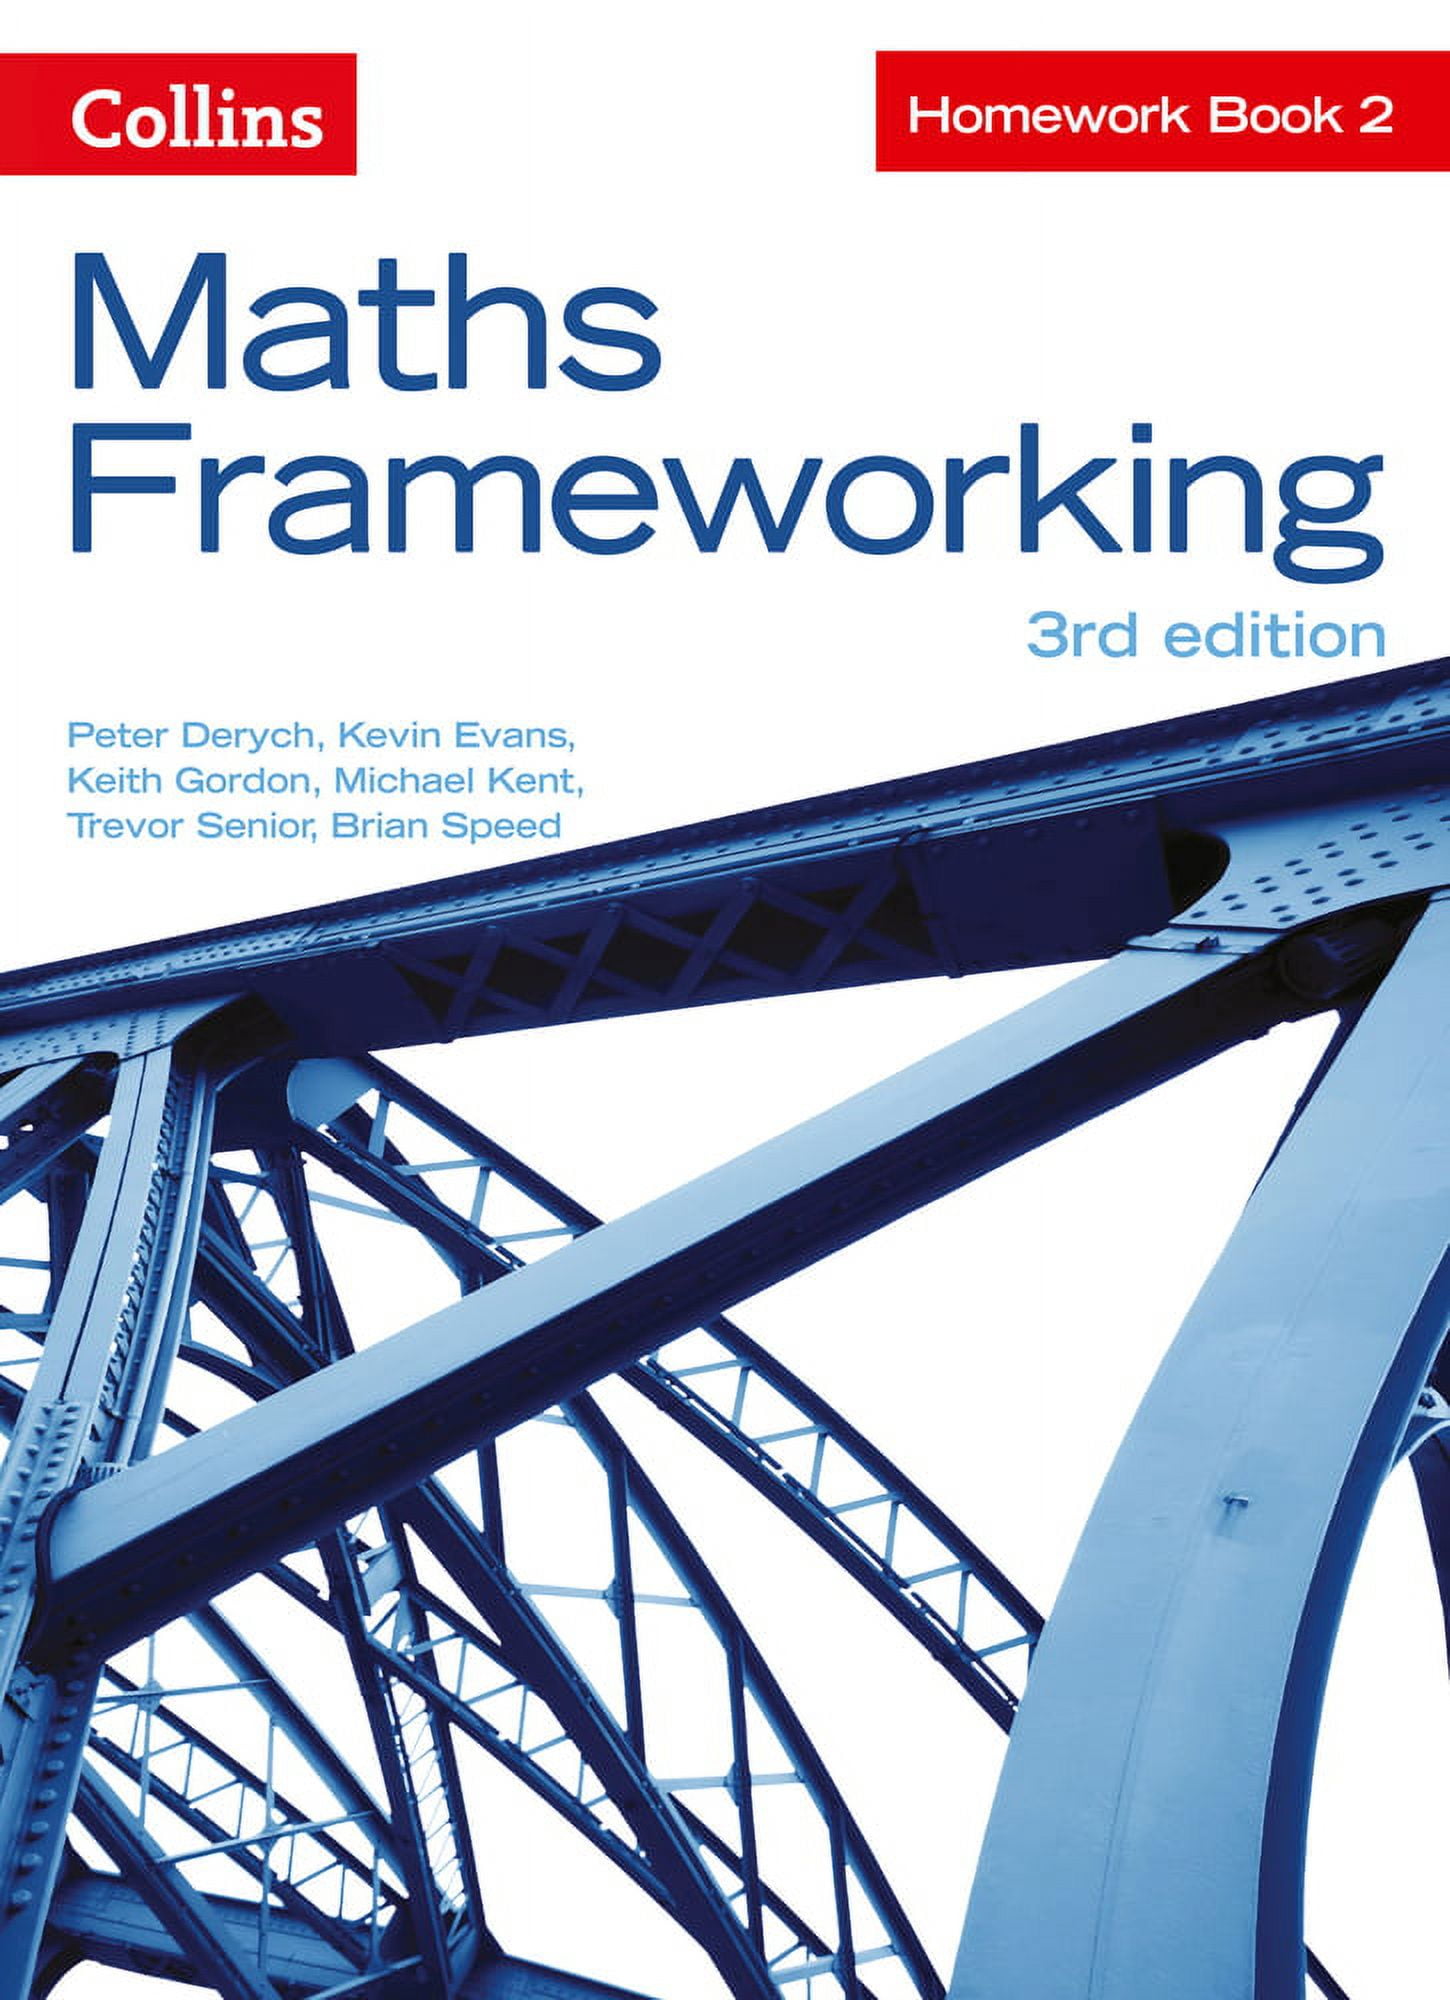 maths frameworking 3rd edition homework book 2